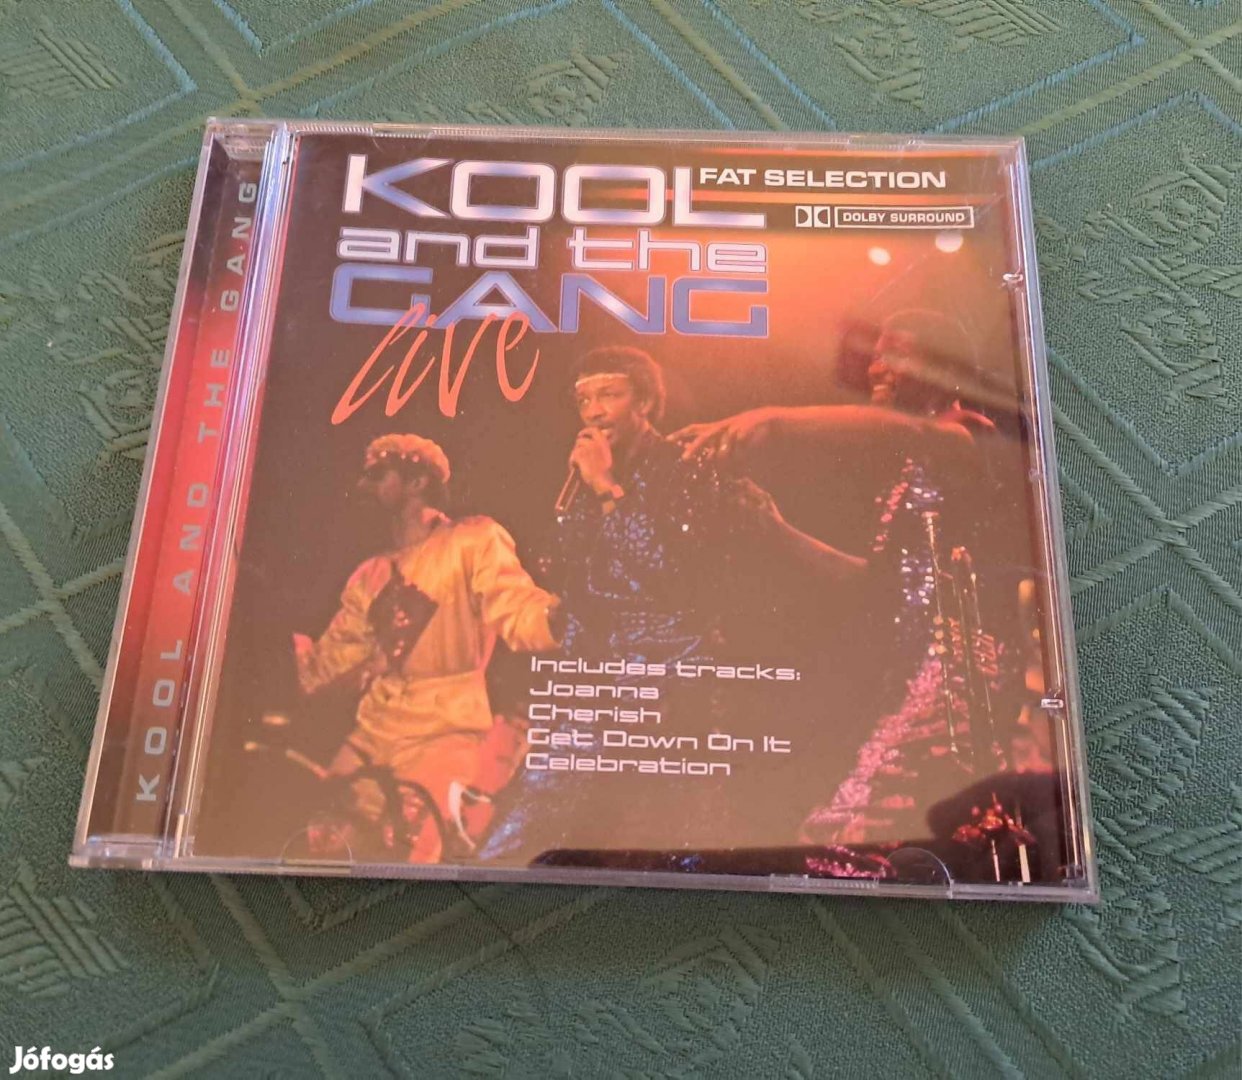 Kool and The Gang LIVE CD